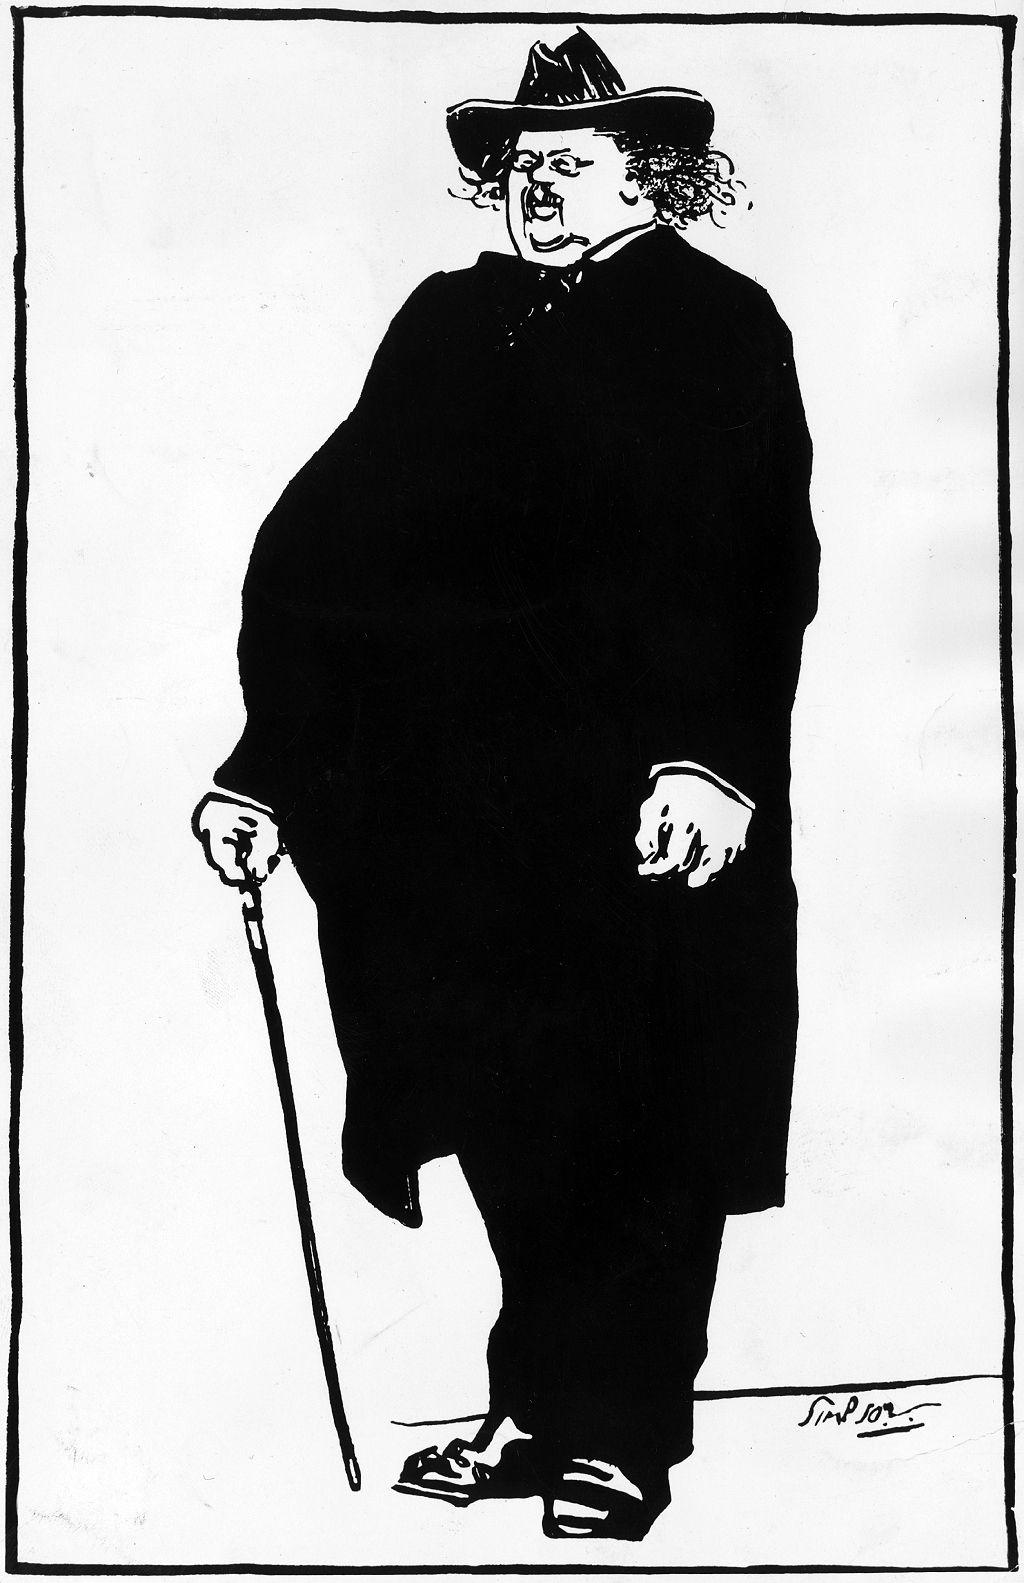 Chesterton (1874 - 1936) con su habitual atuendo de sombrero de ala ancha, capa y quevedos. 